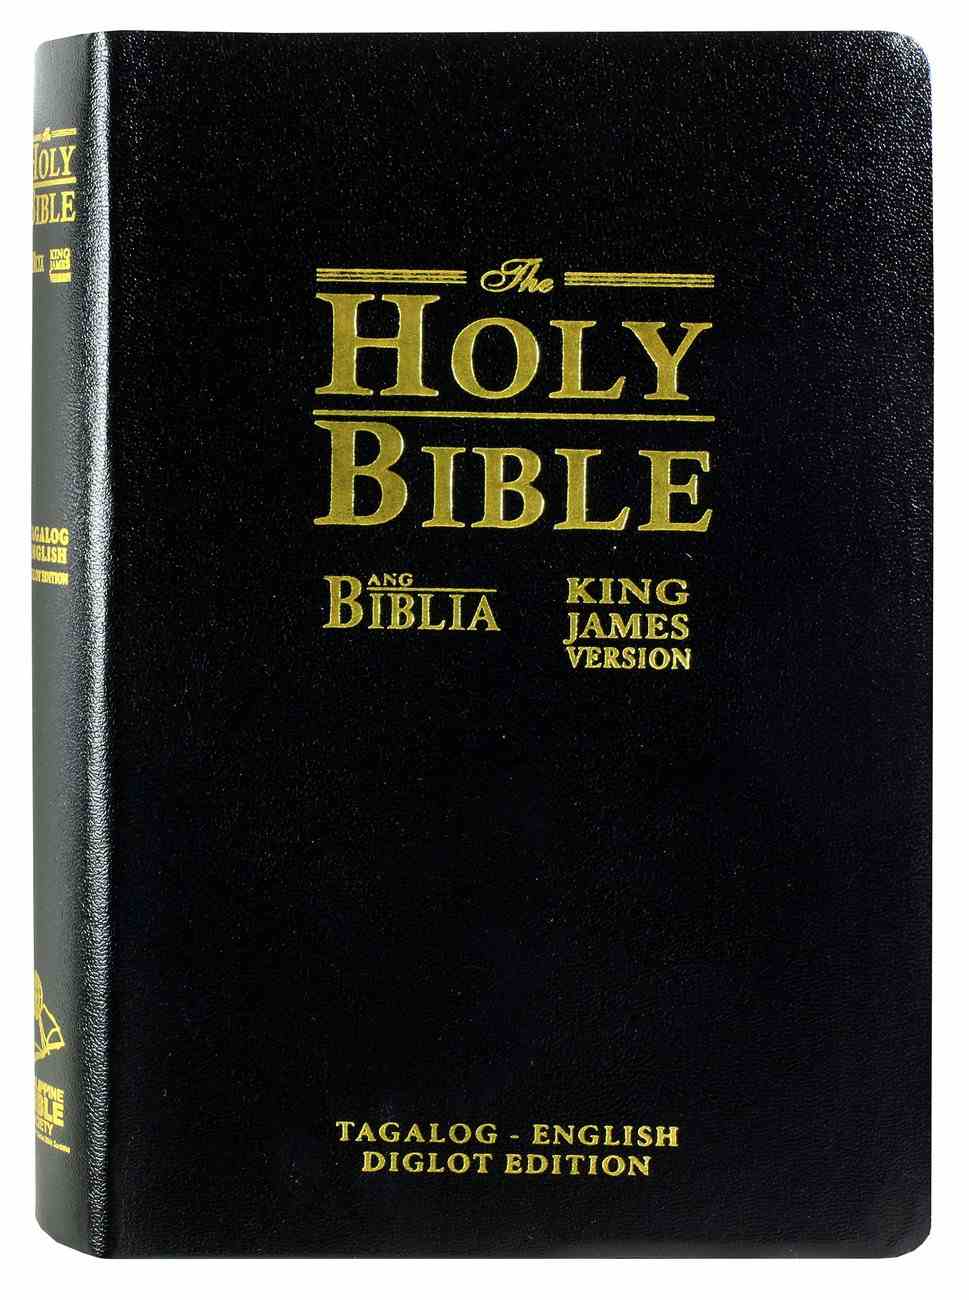 biblical movie scripts pdf